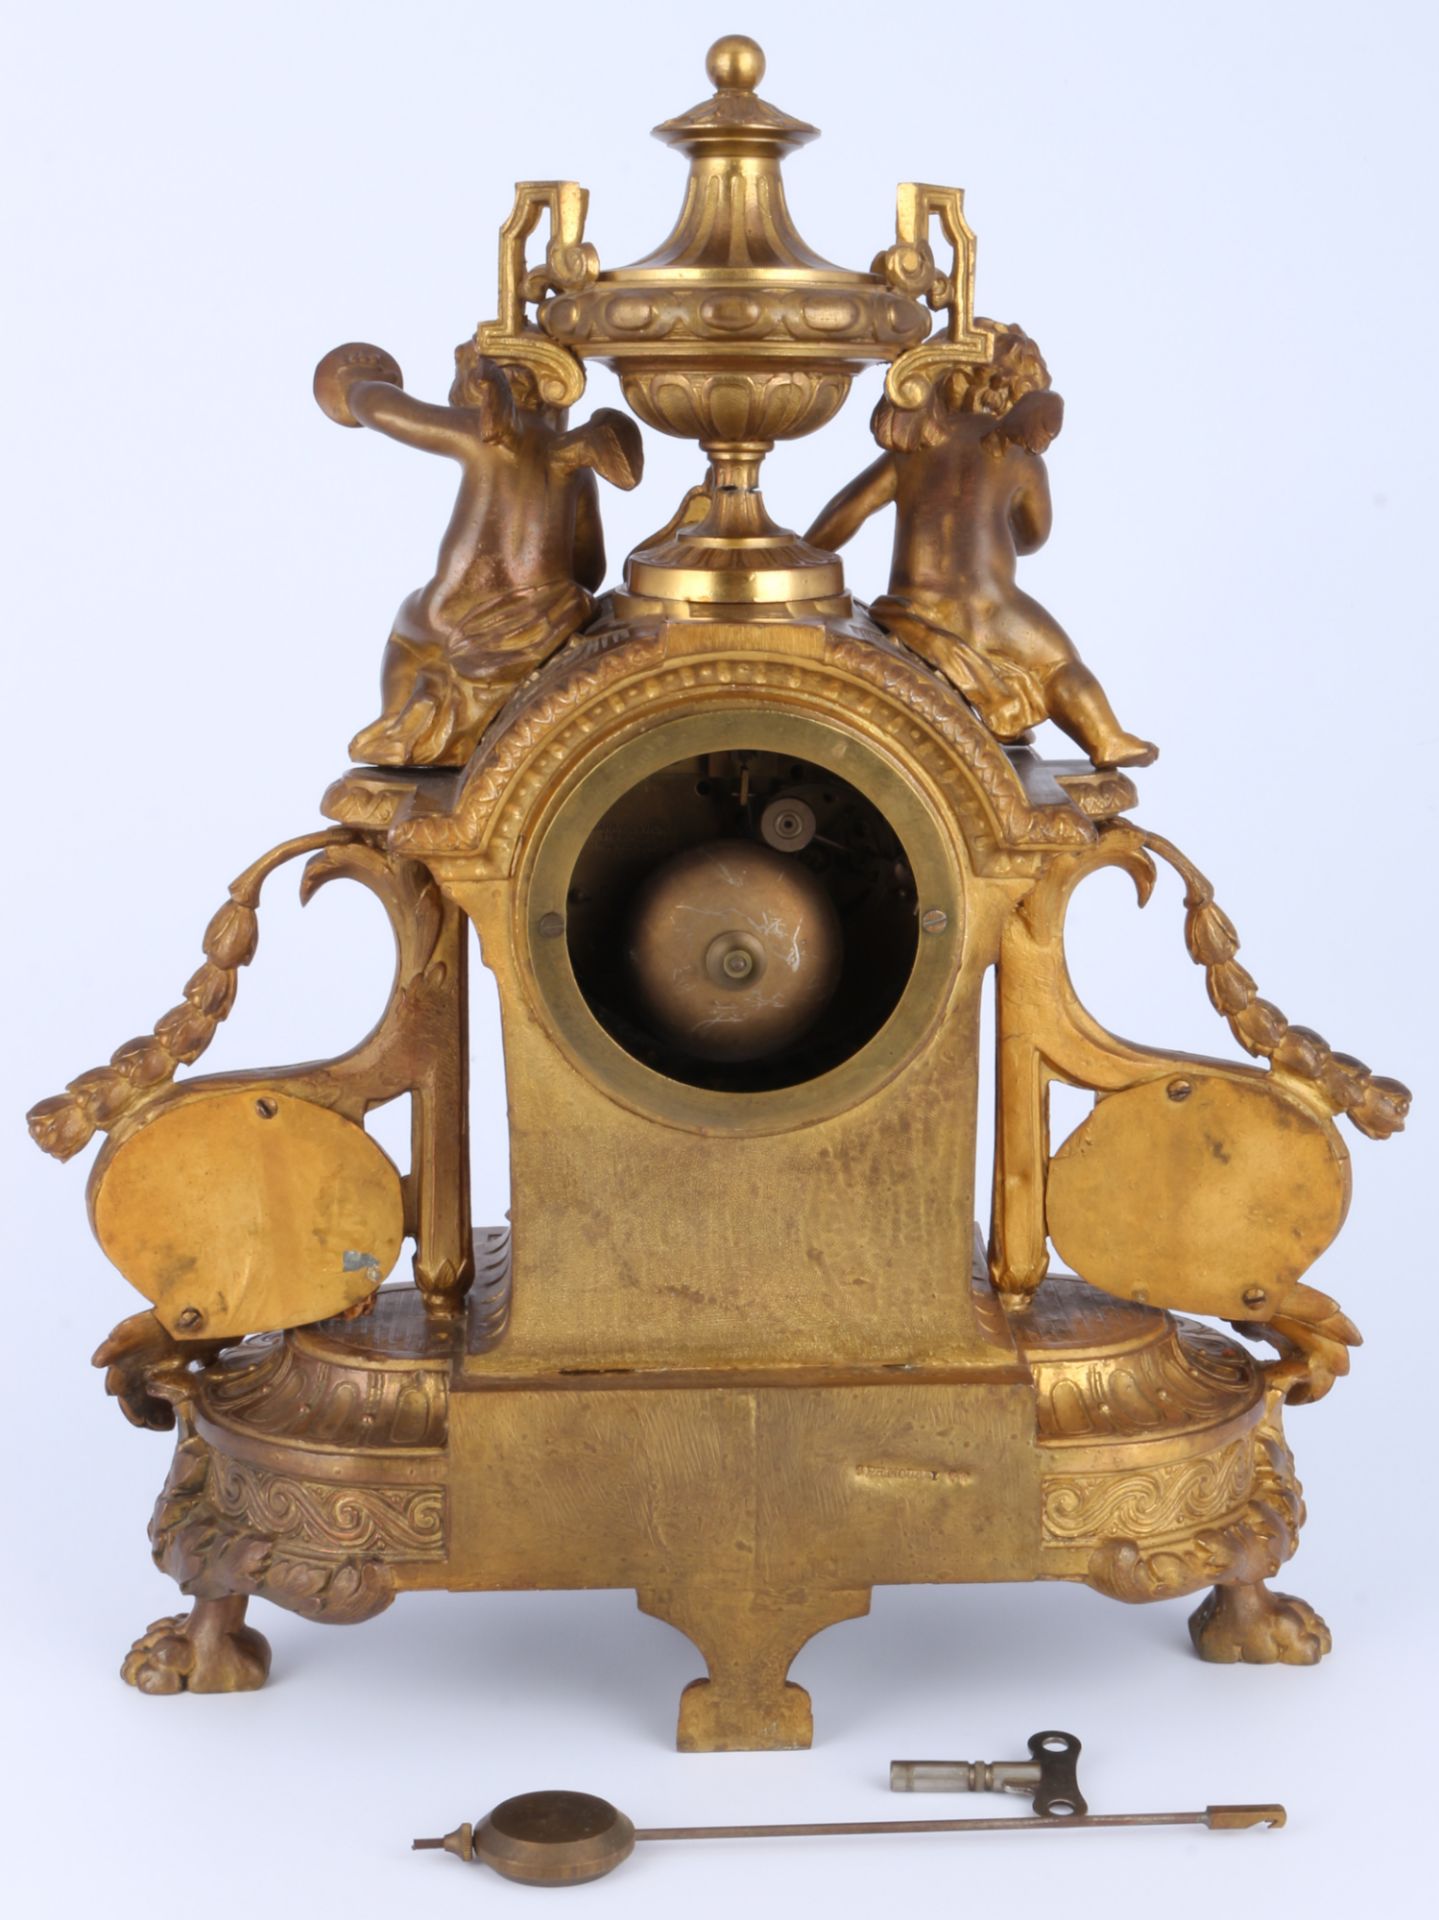 Kaminuhr Frankreich 19. Jahrhundert, french mantel clock 19th century,  - Bild 3 aus 6